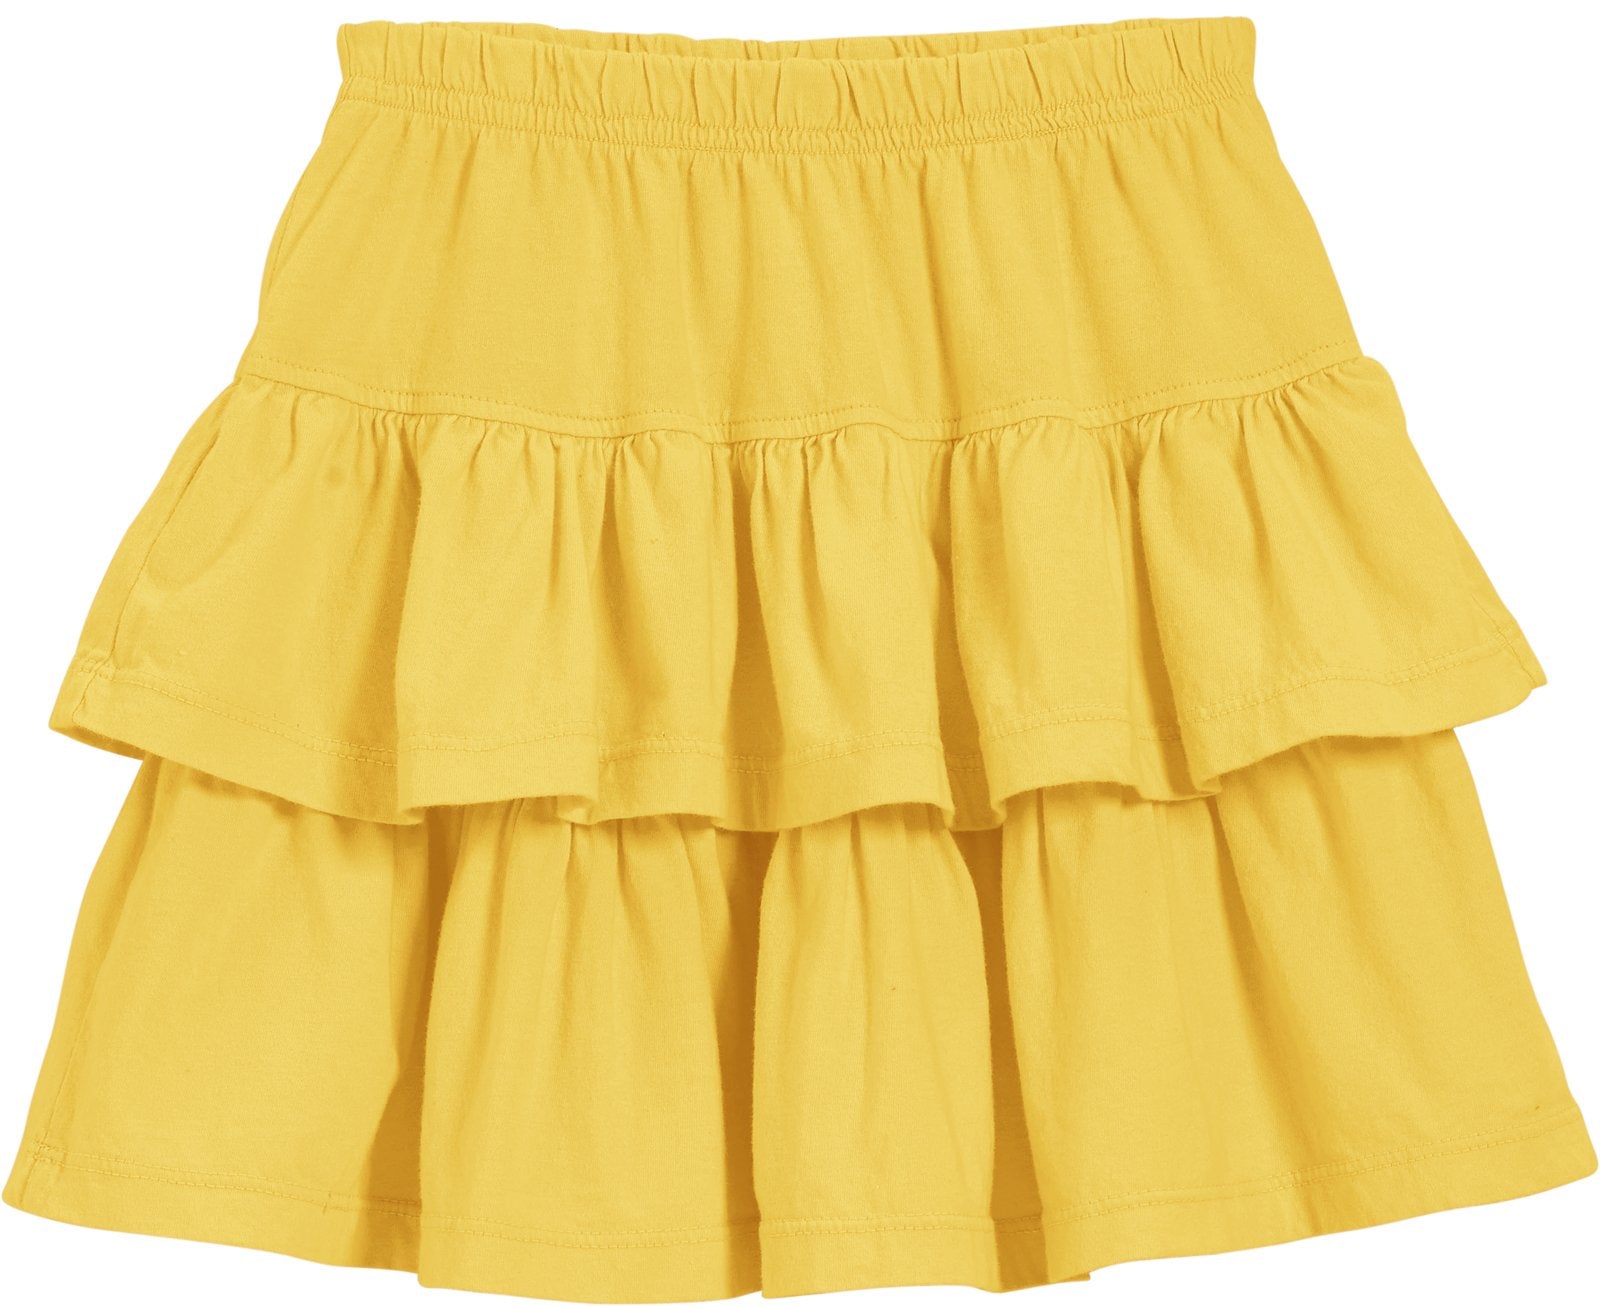 Girls Soft Cotton Jersey Tiered Threads USA City Skirt 